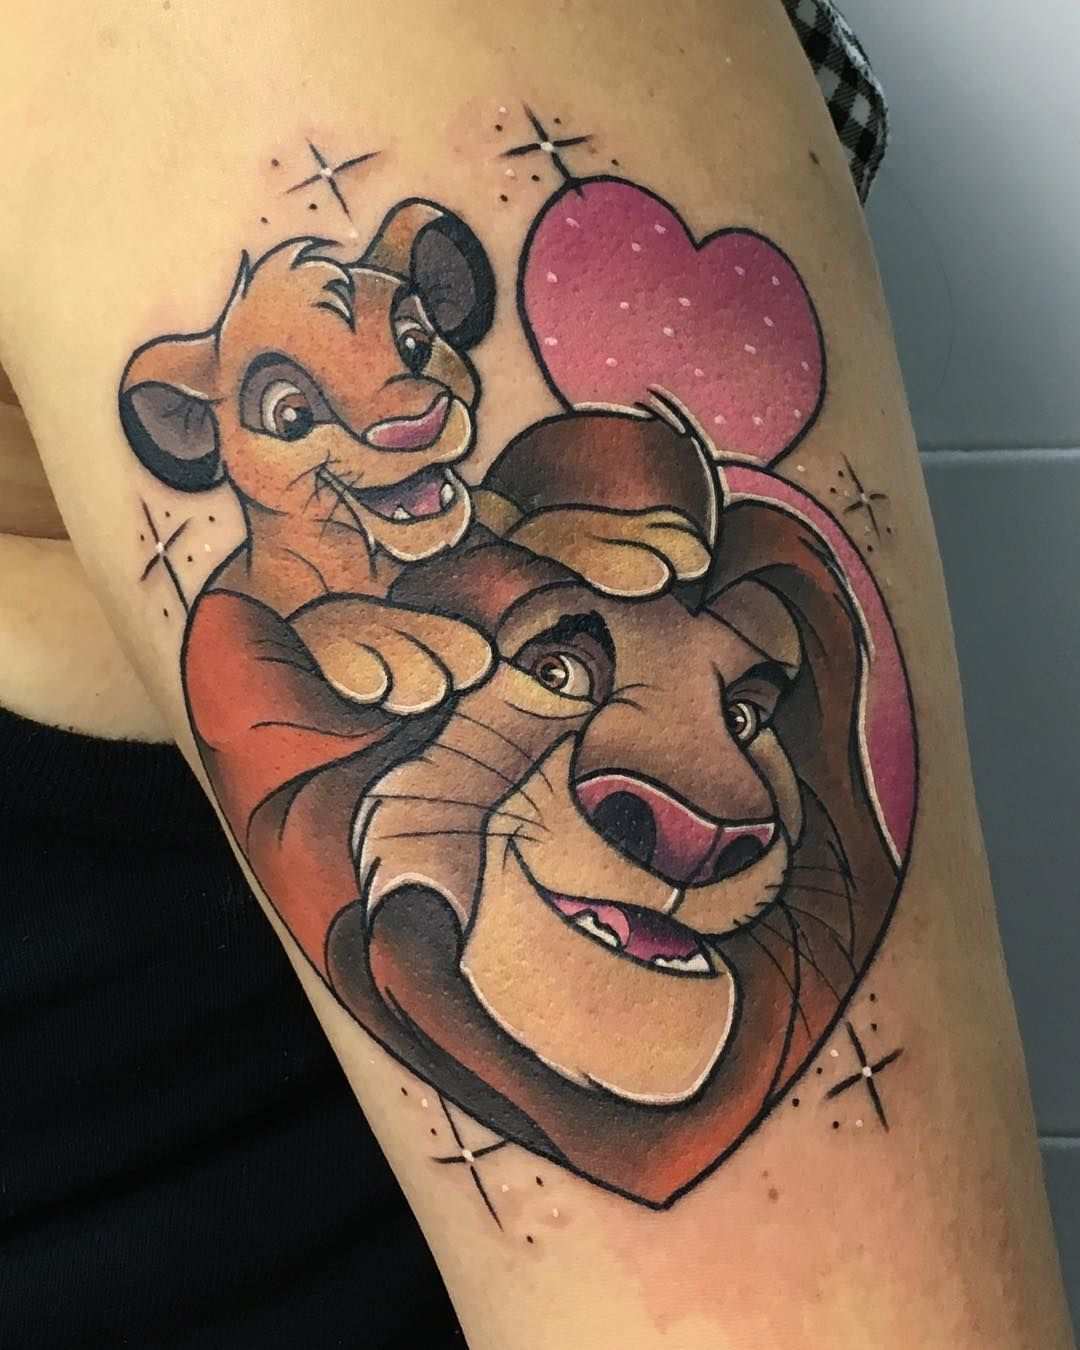 Du Findest Disneys Der Konig Der Lowen So Toll Dass Du Deine Liebe Zum Film Am Liebsten In Form Eines Tattoos Lion King Tattoo Disney Tattoos Lion King Art